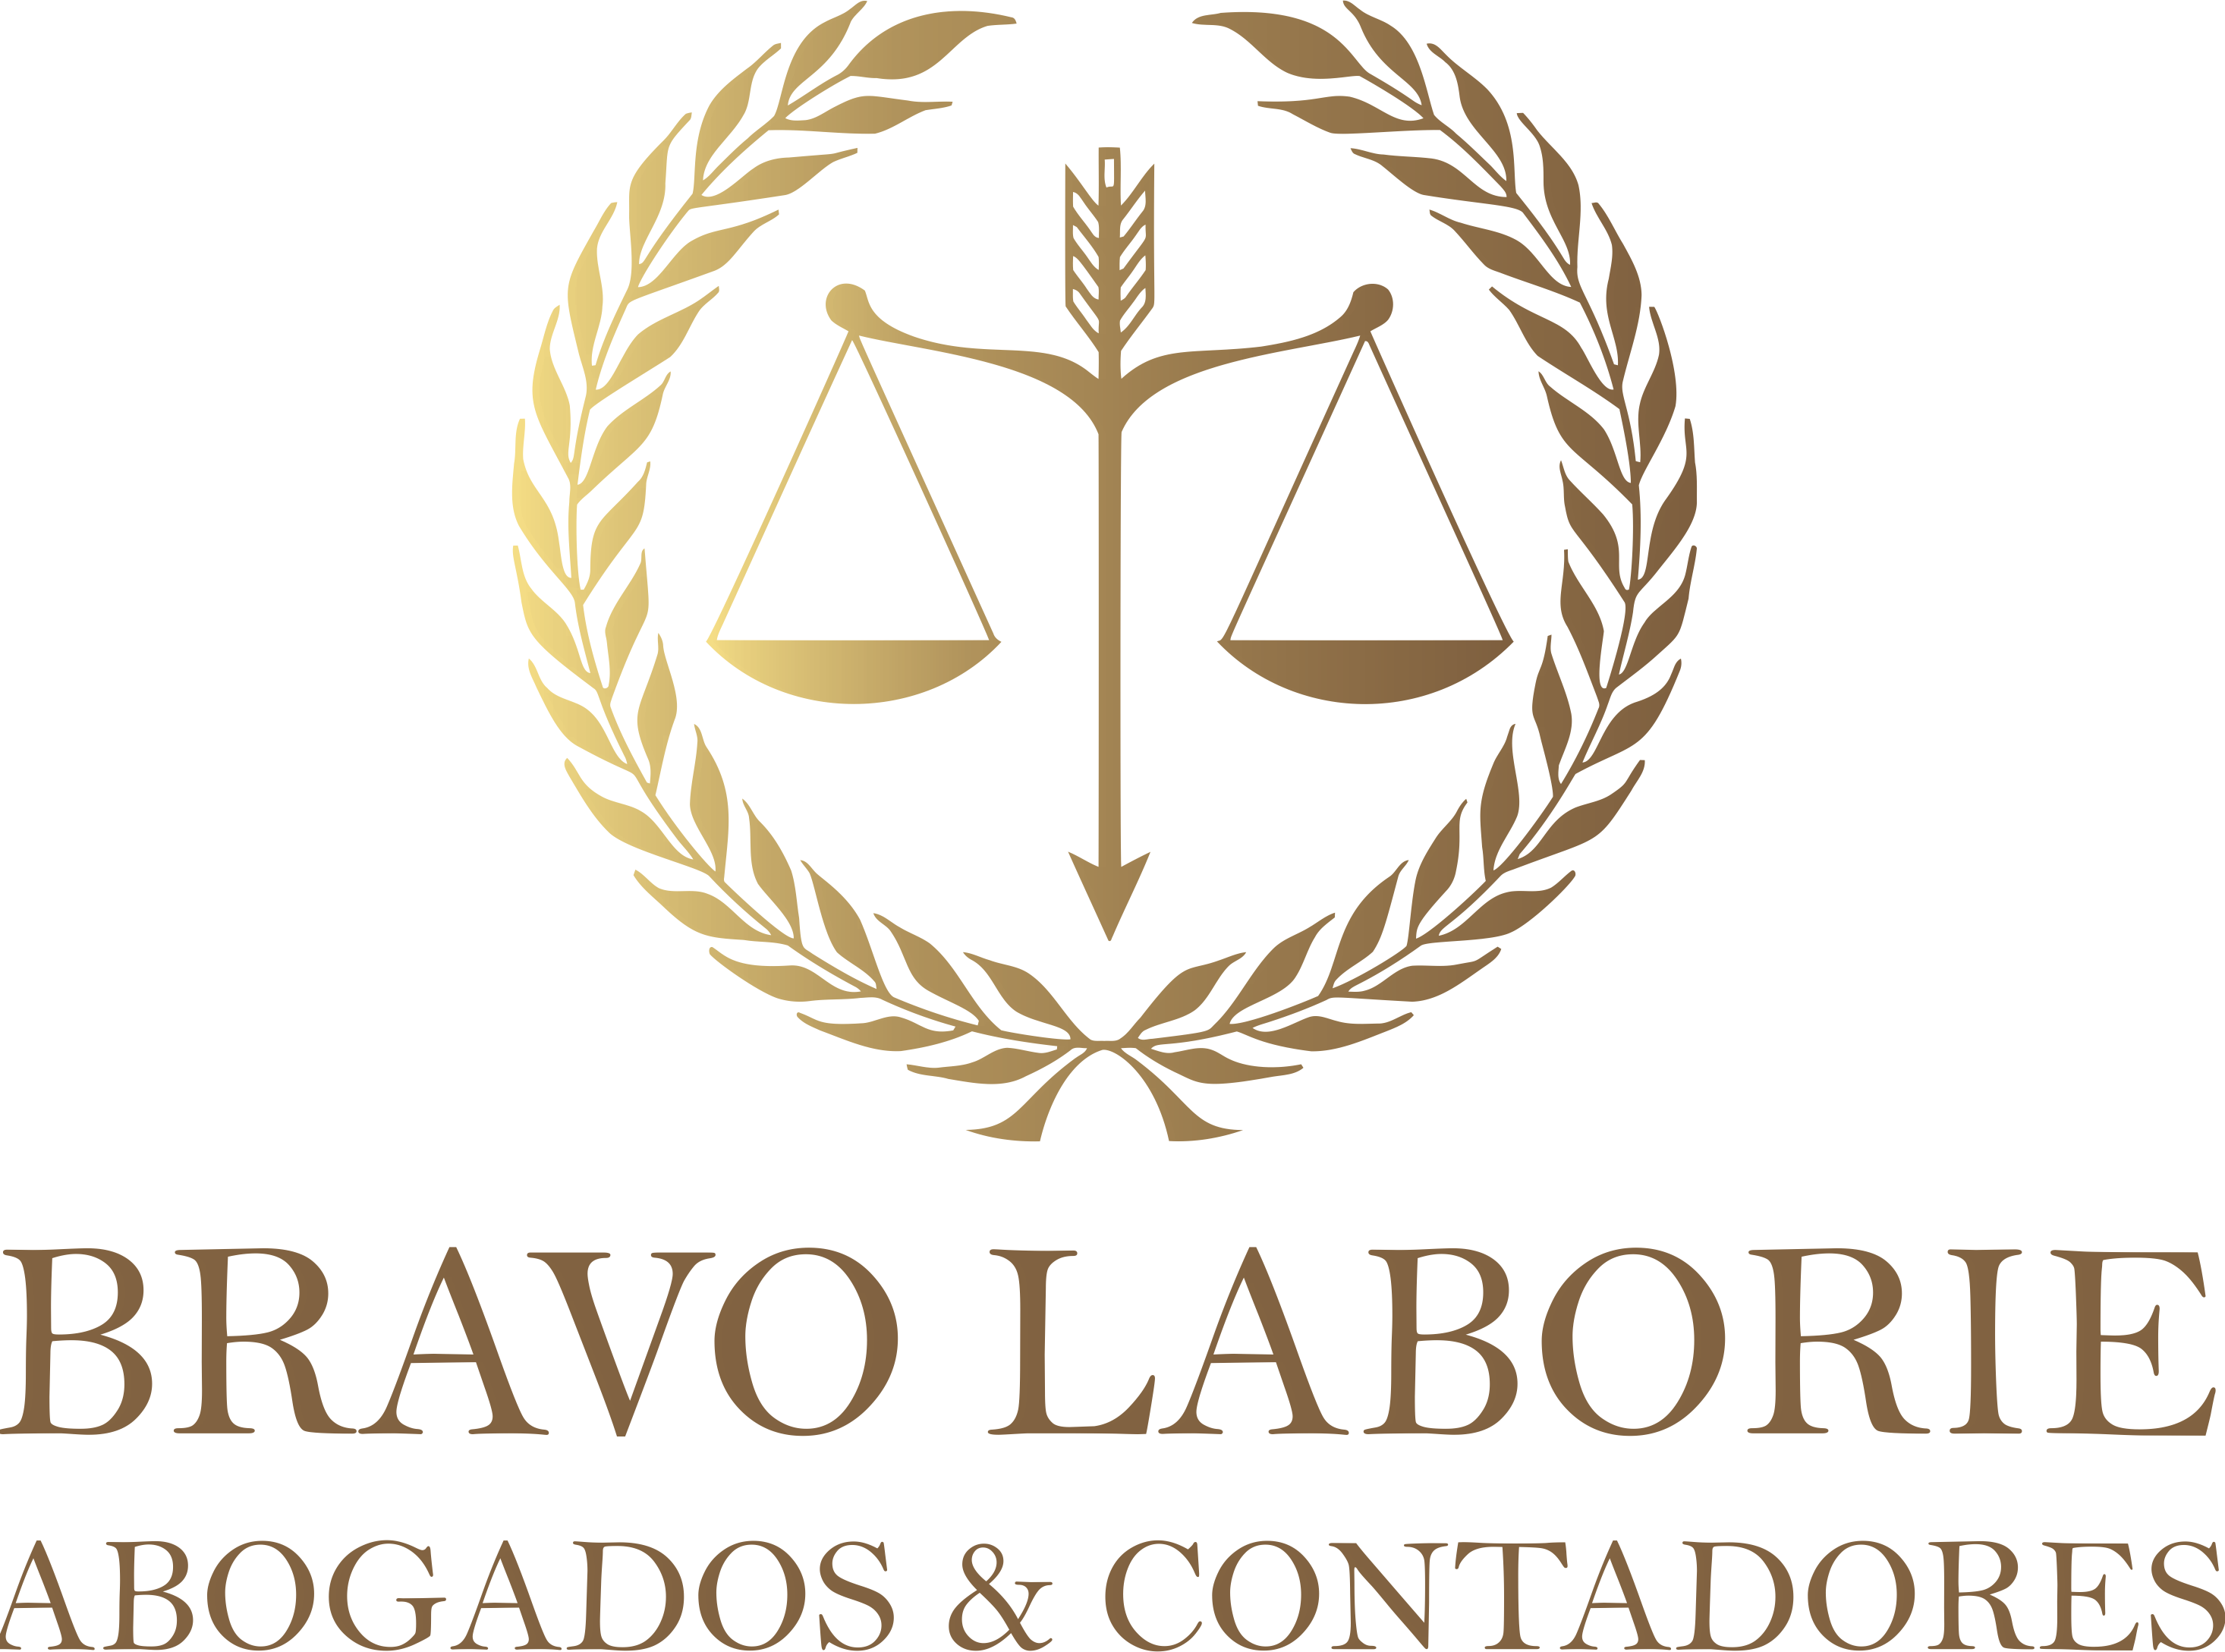 Bravo Laborie Abogados & contadores